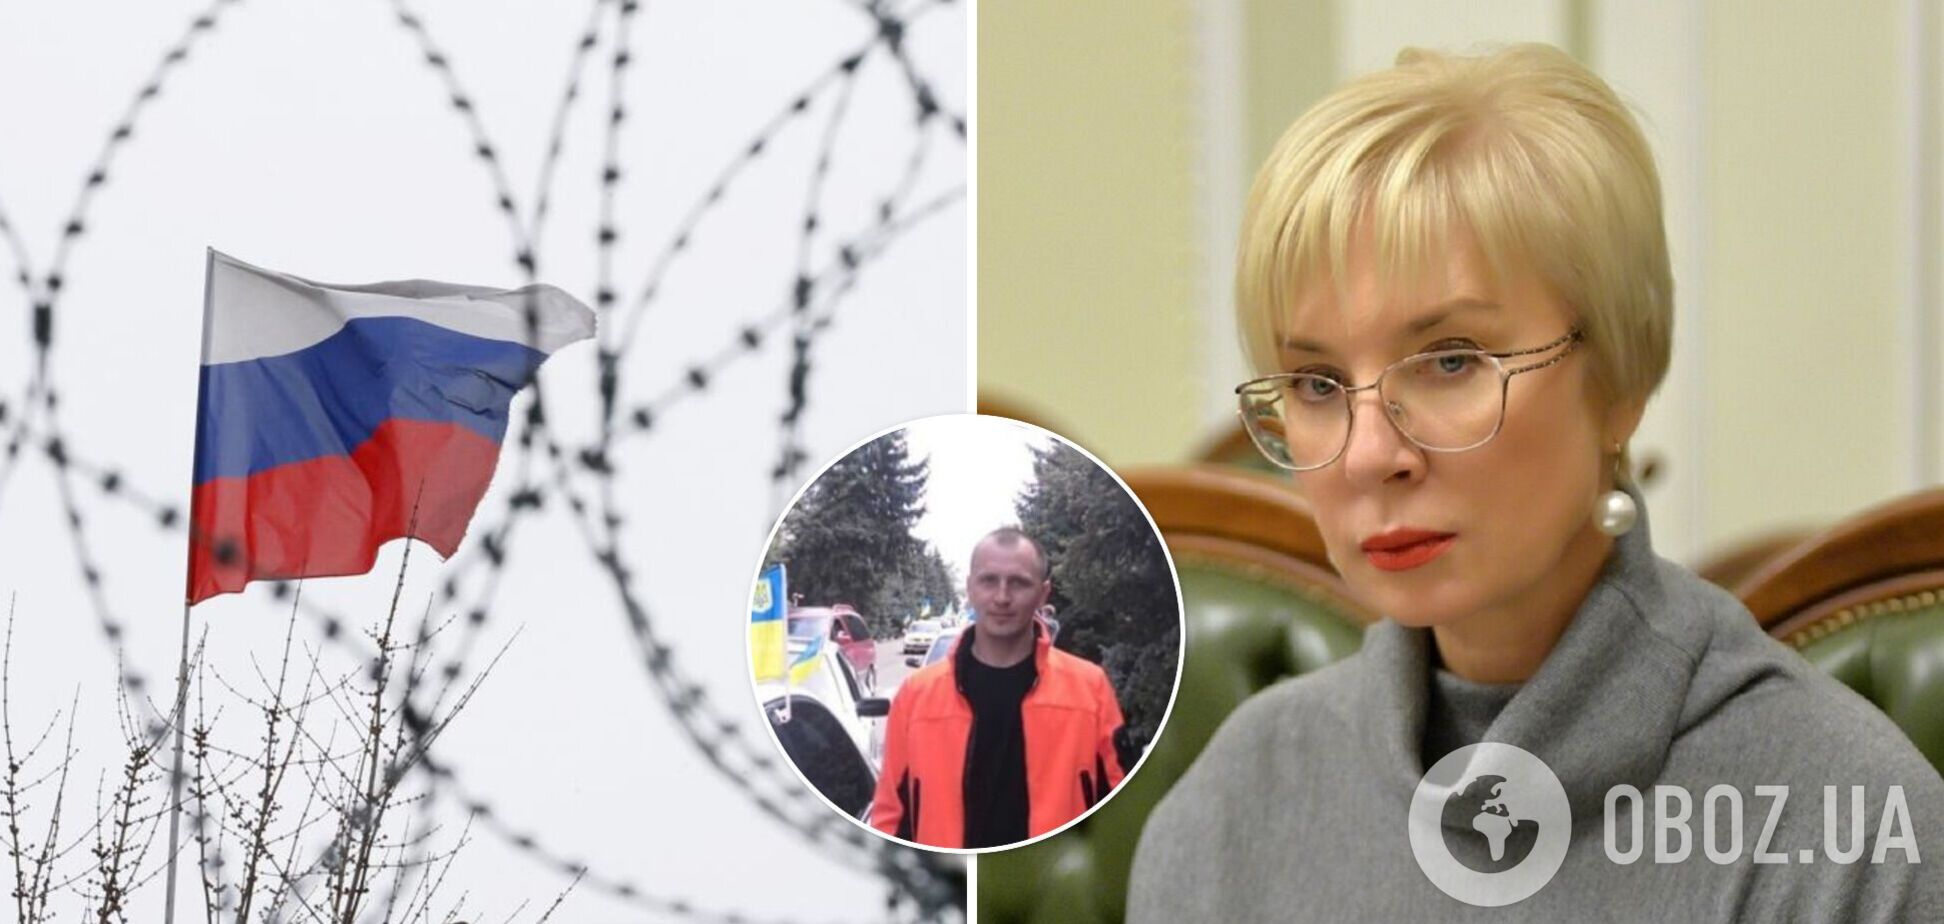 РФ морить голодом українського політв'язня: лікарка медчастини заявила, що 'х*хлів треба вбивати'